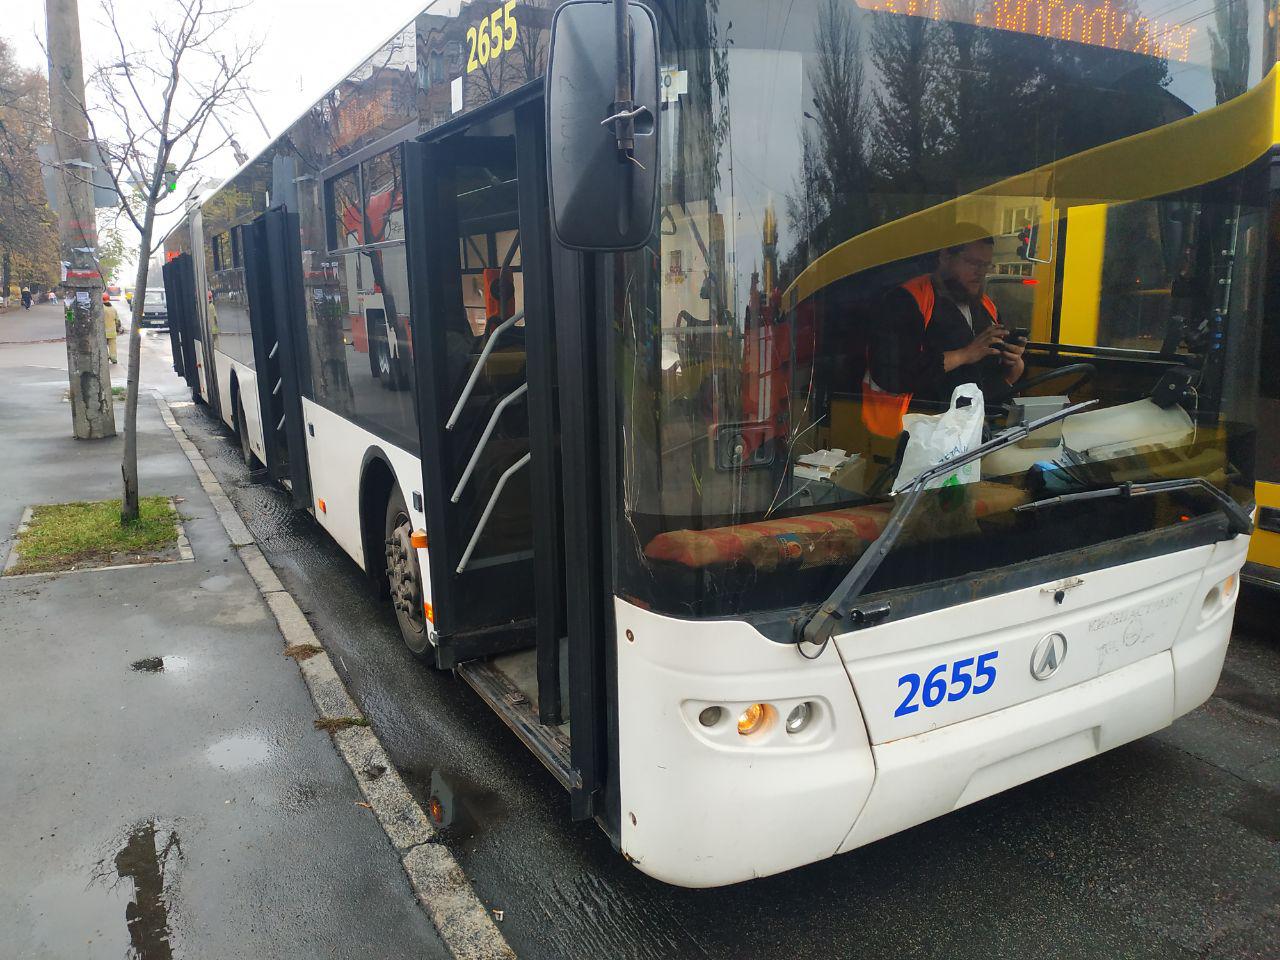 ДСНС: У Києві на маршруті зайнявся тролейбус